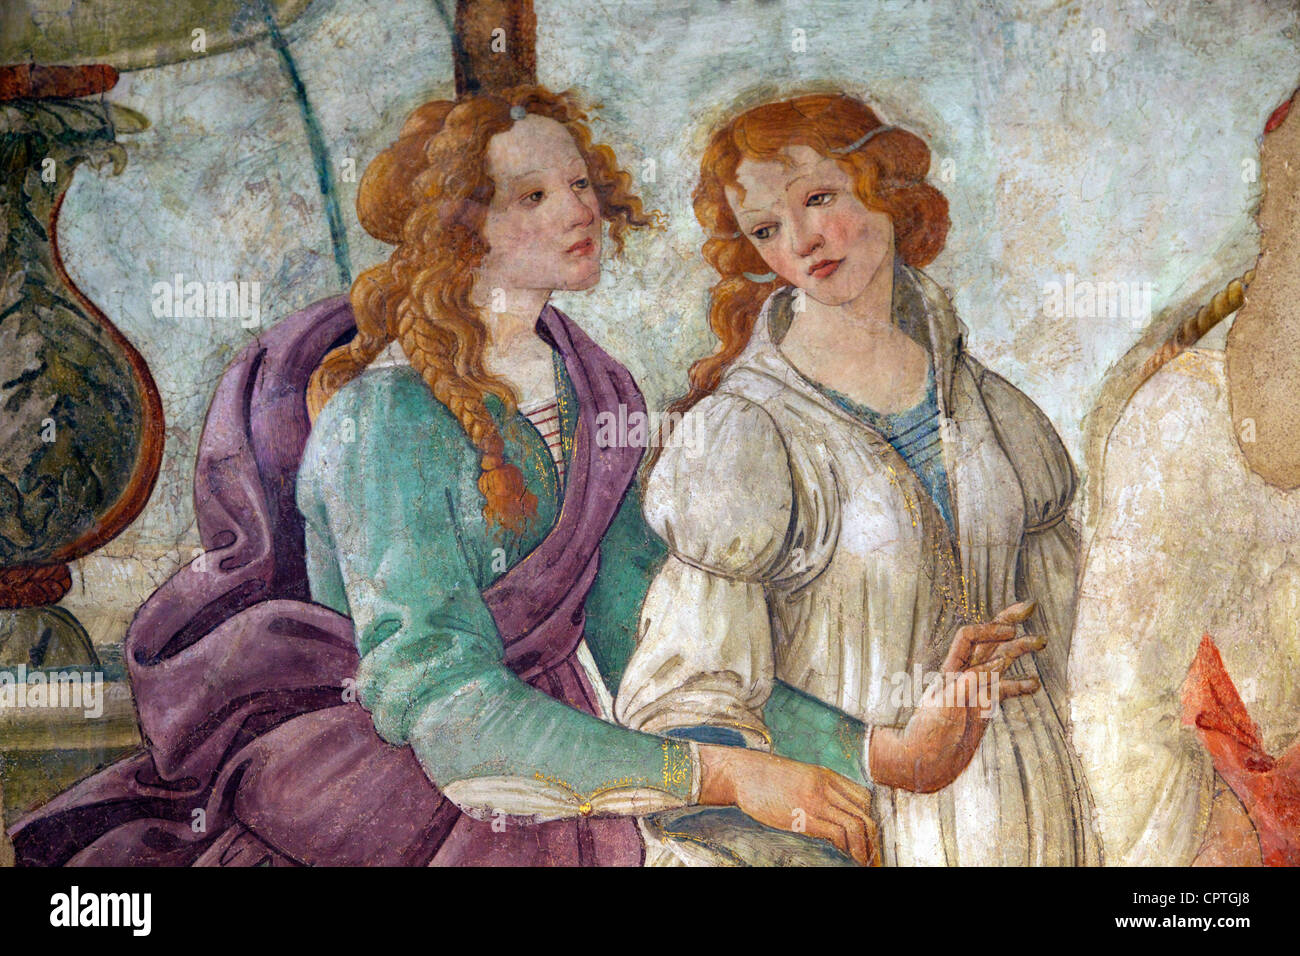 Detalle de Venus y las tres Gracias ofreciendo regalos a una chica joven,  por Botticelli, 1483-1485, Musée du Louvre, París Fotografía de stock -  Alamy